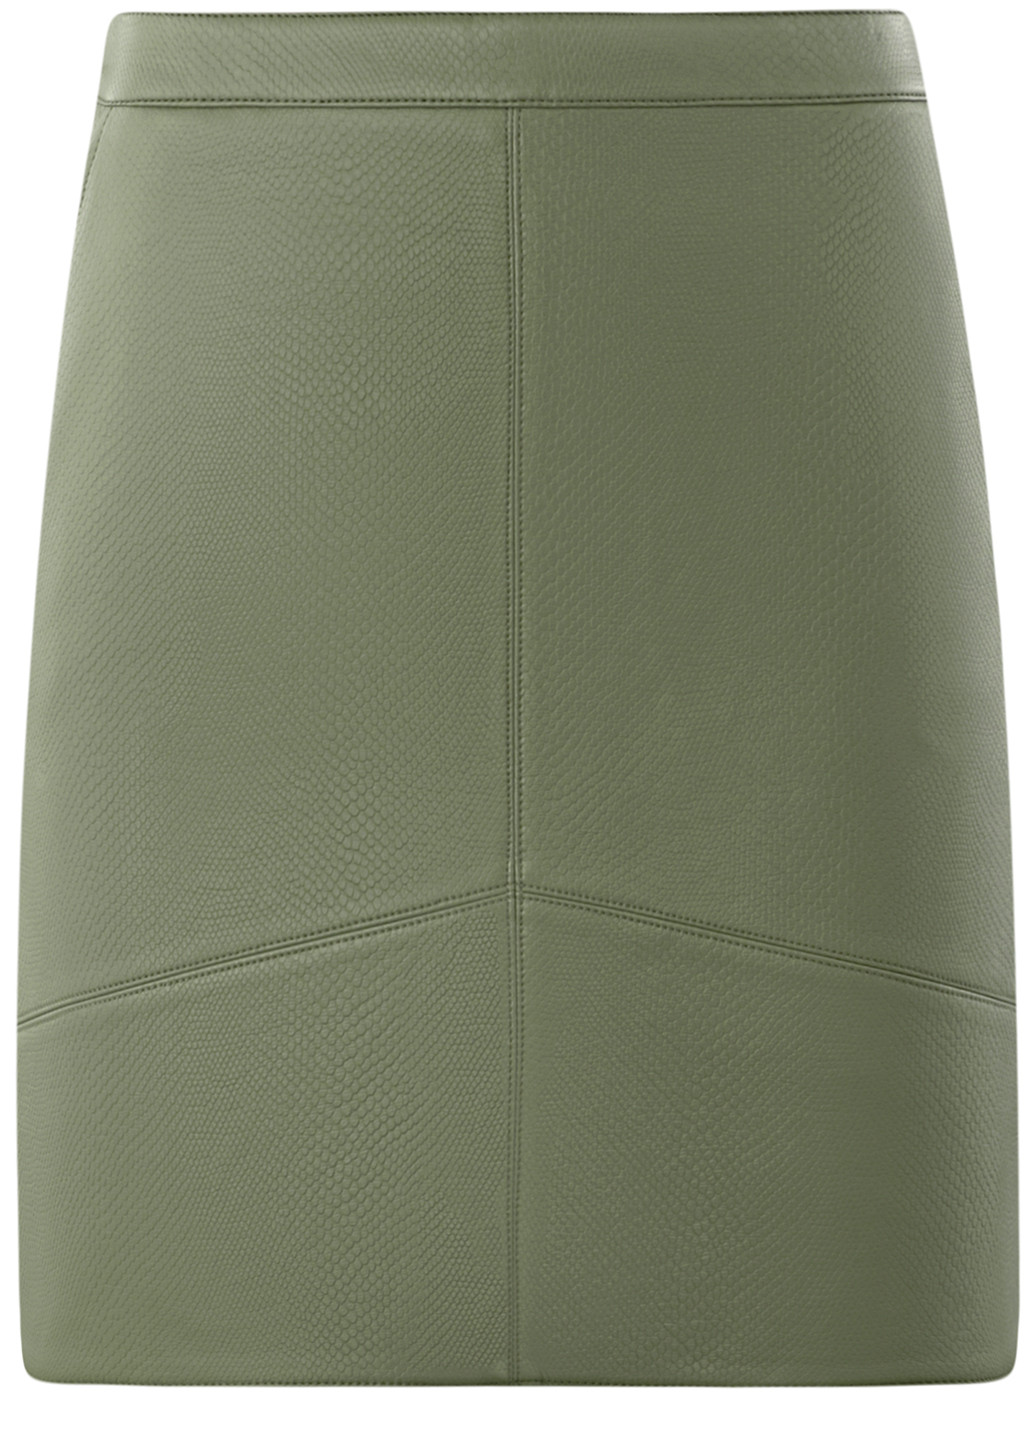 Светло-зеленая кэжуал однотонная юбка Oodji мини